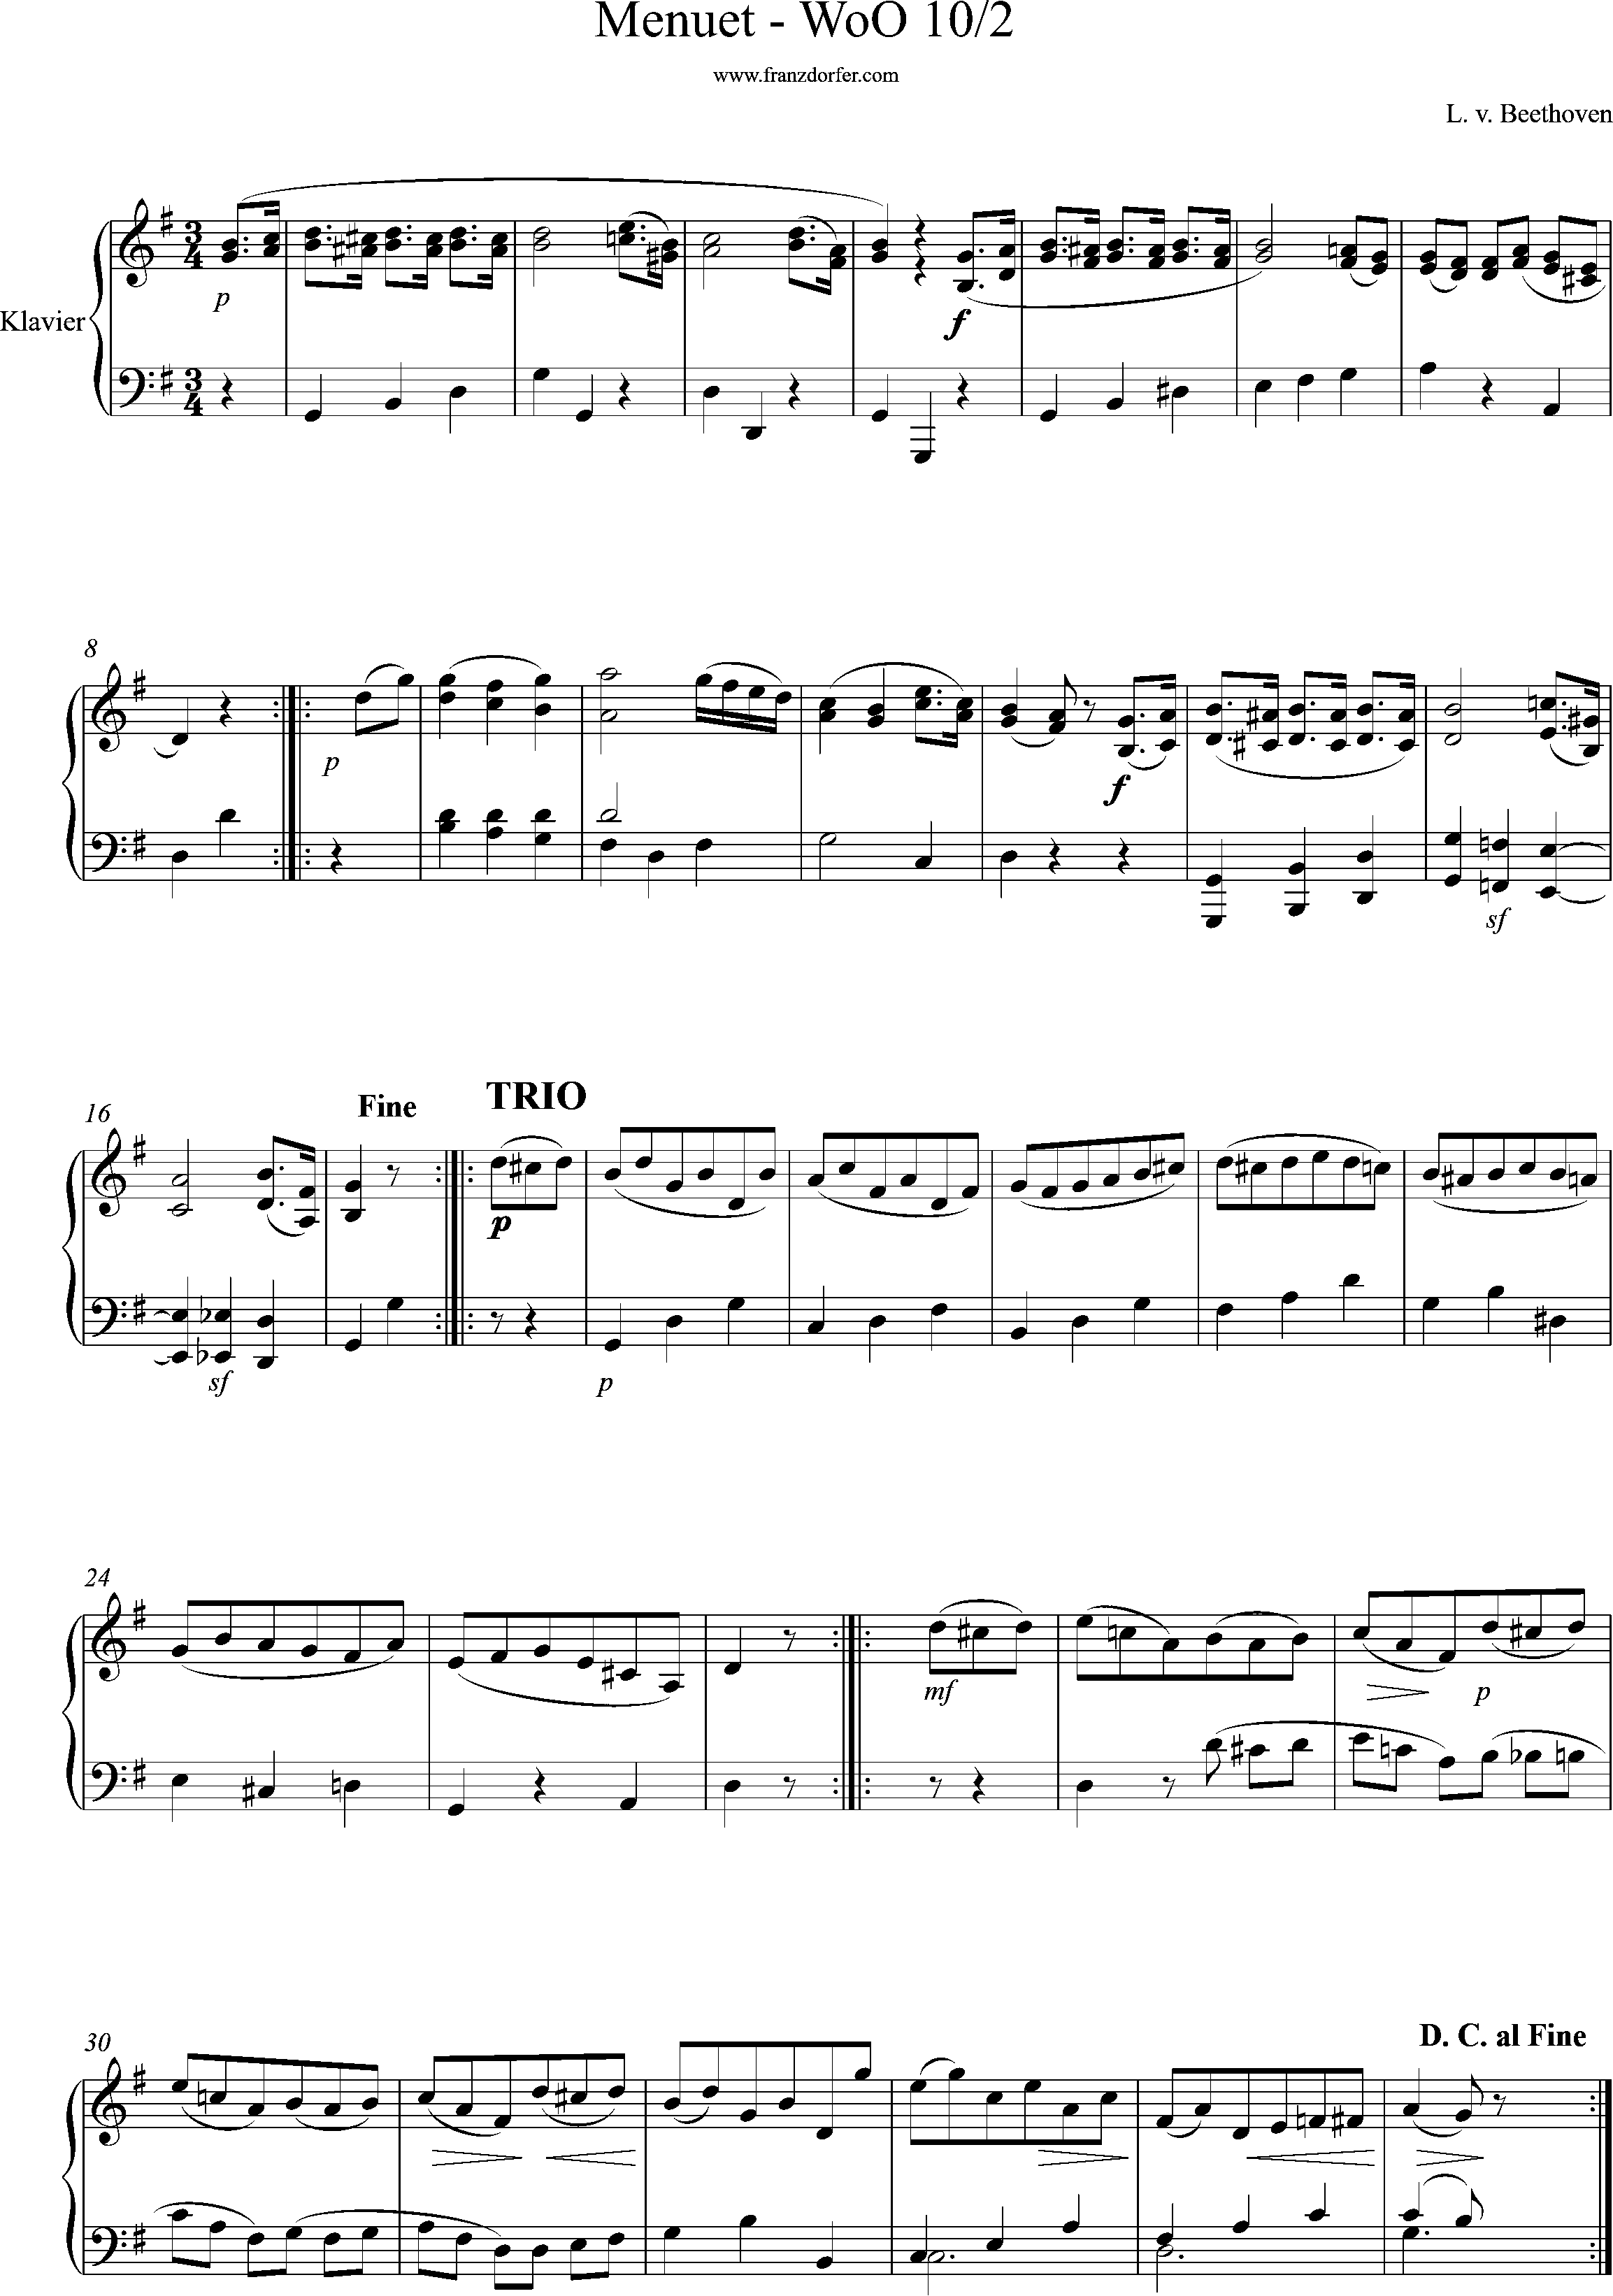 klaviernoten, WoO10/2, Beethoven